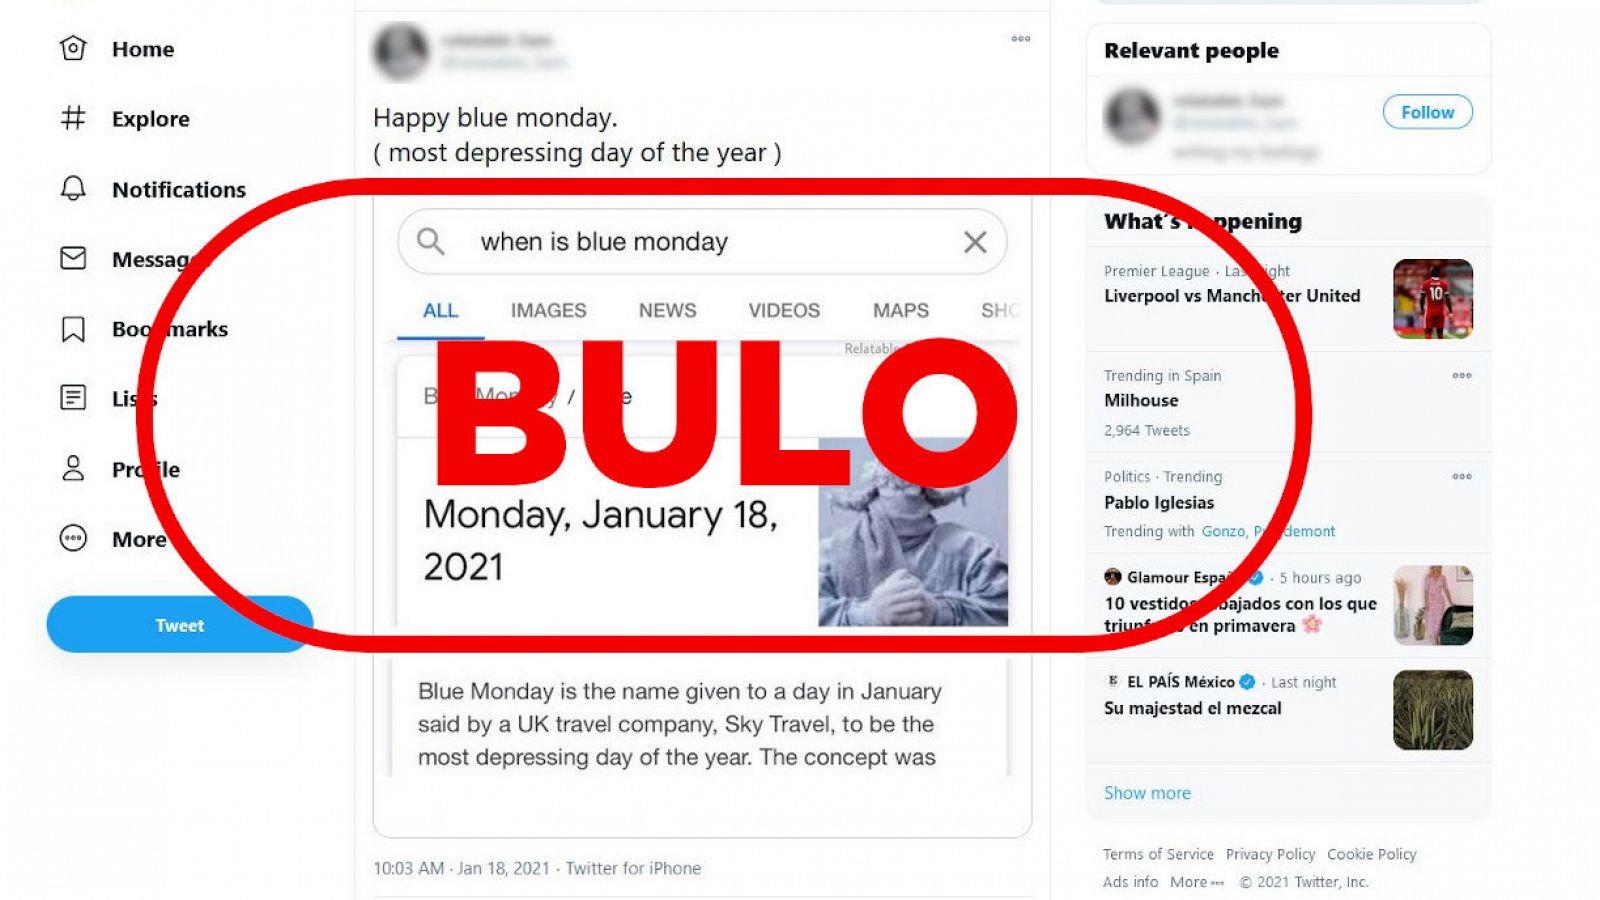 Captura de un tuit con el bulo de la falsa conmemoración y el sello de VerificaRTVE con la palabra bulo.